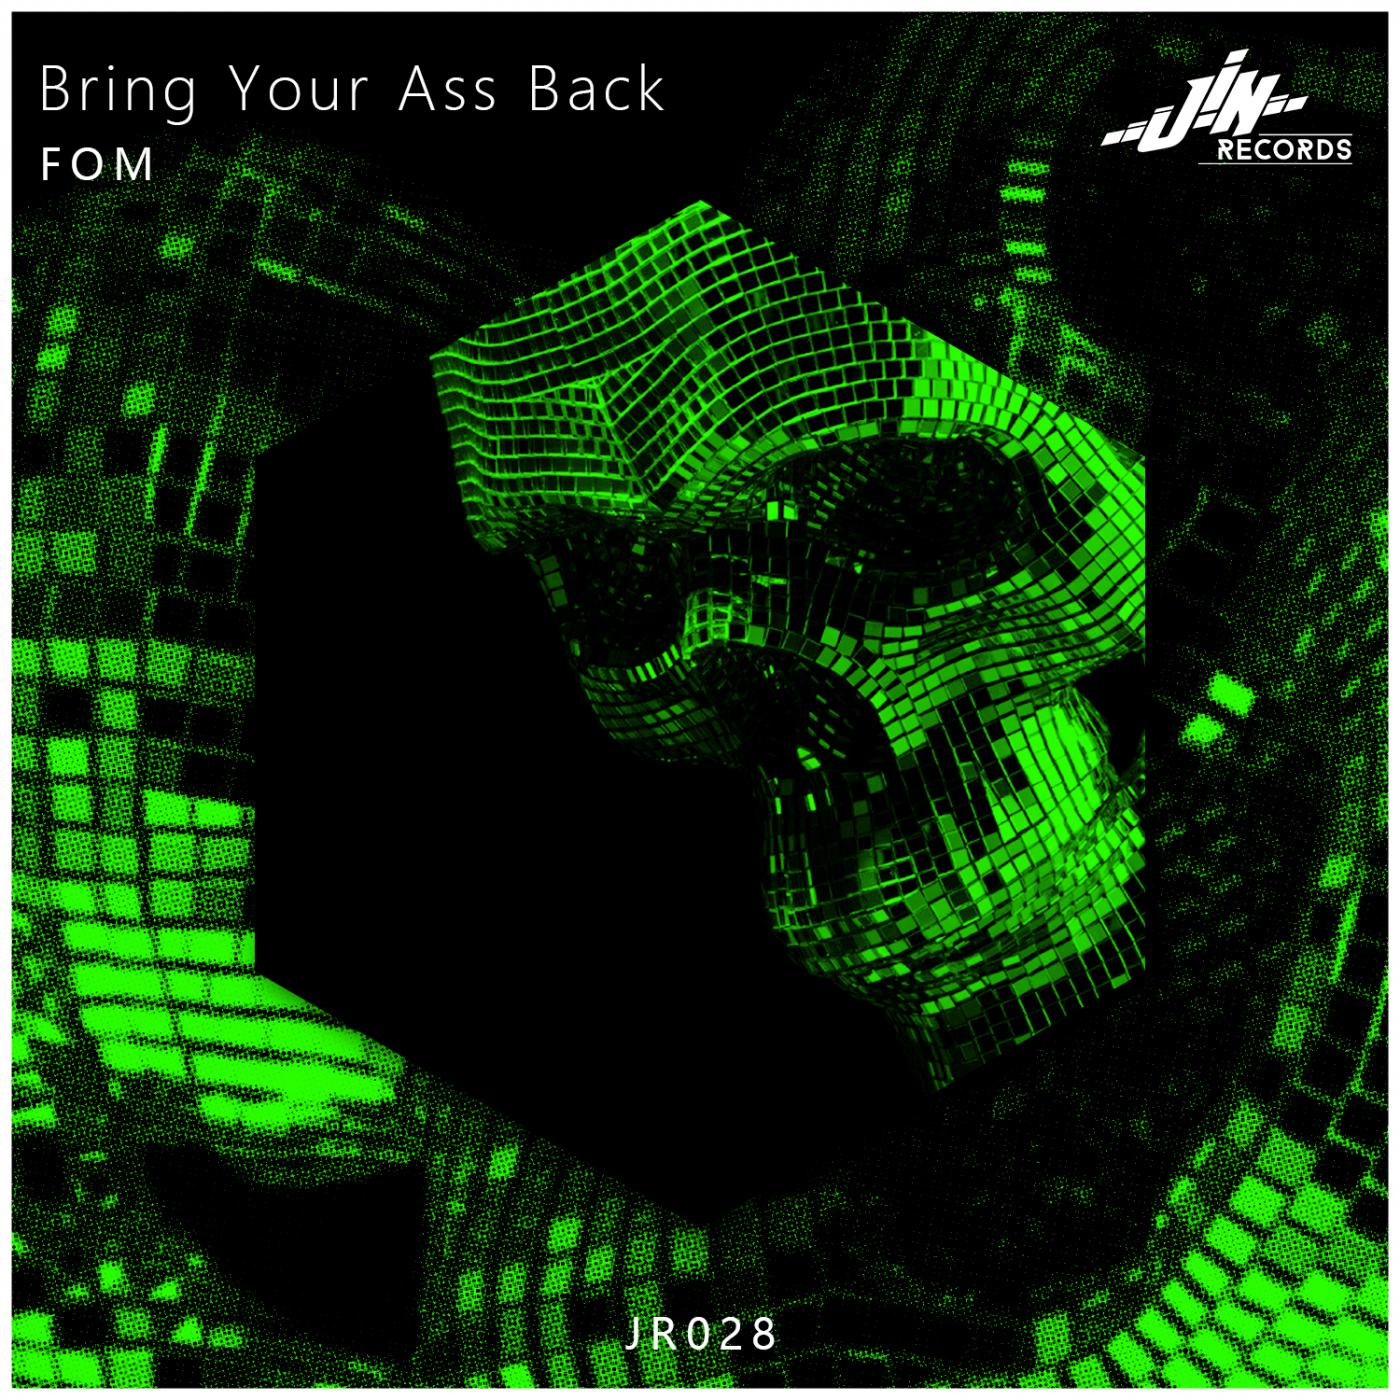 FOM - Bring Your Ass Back (Original Mix)